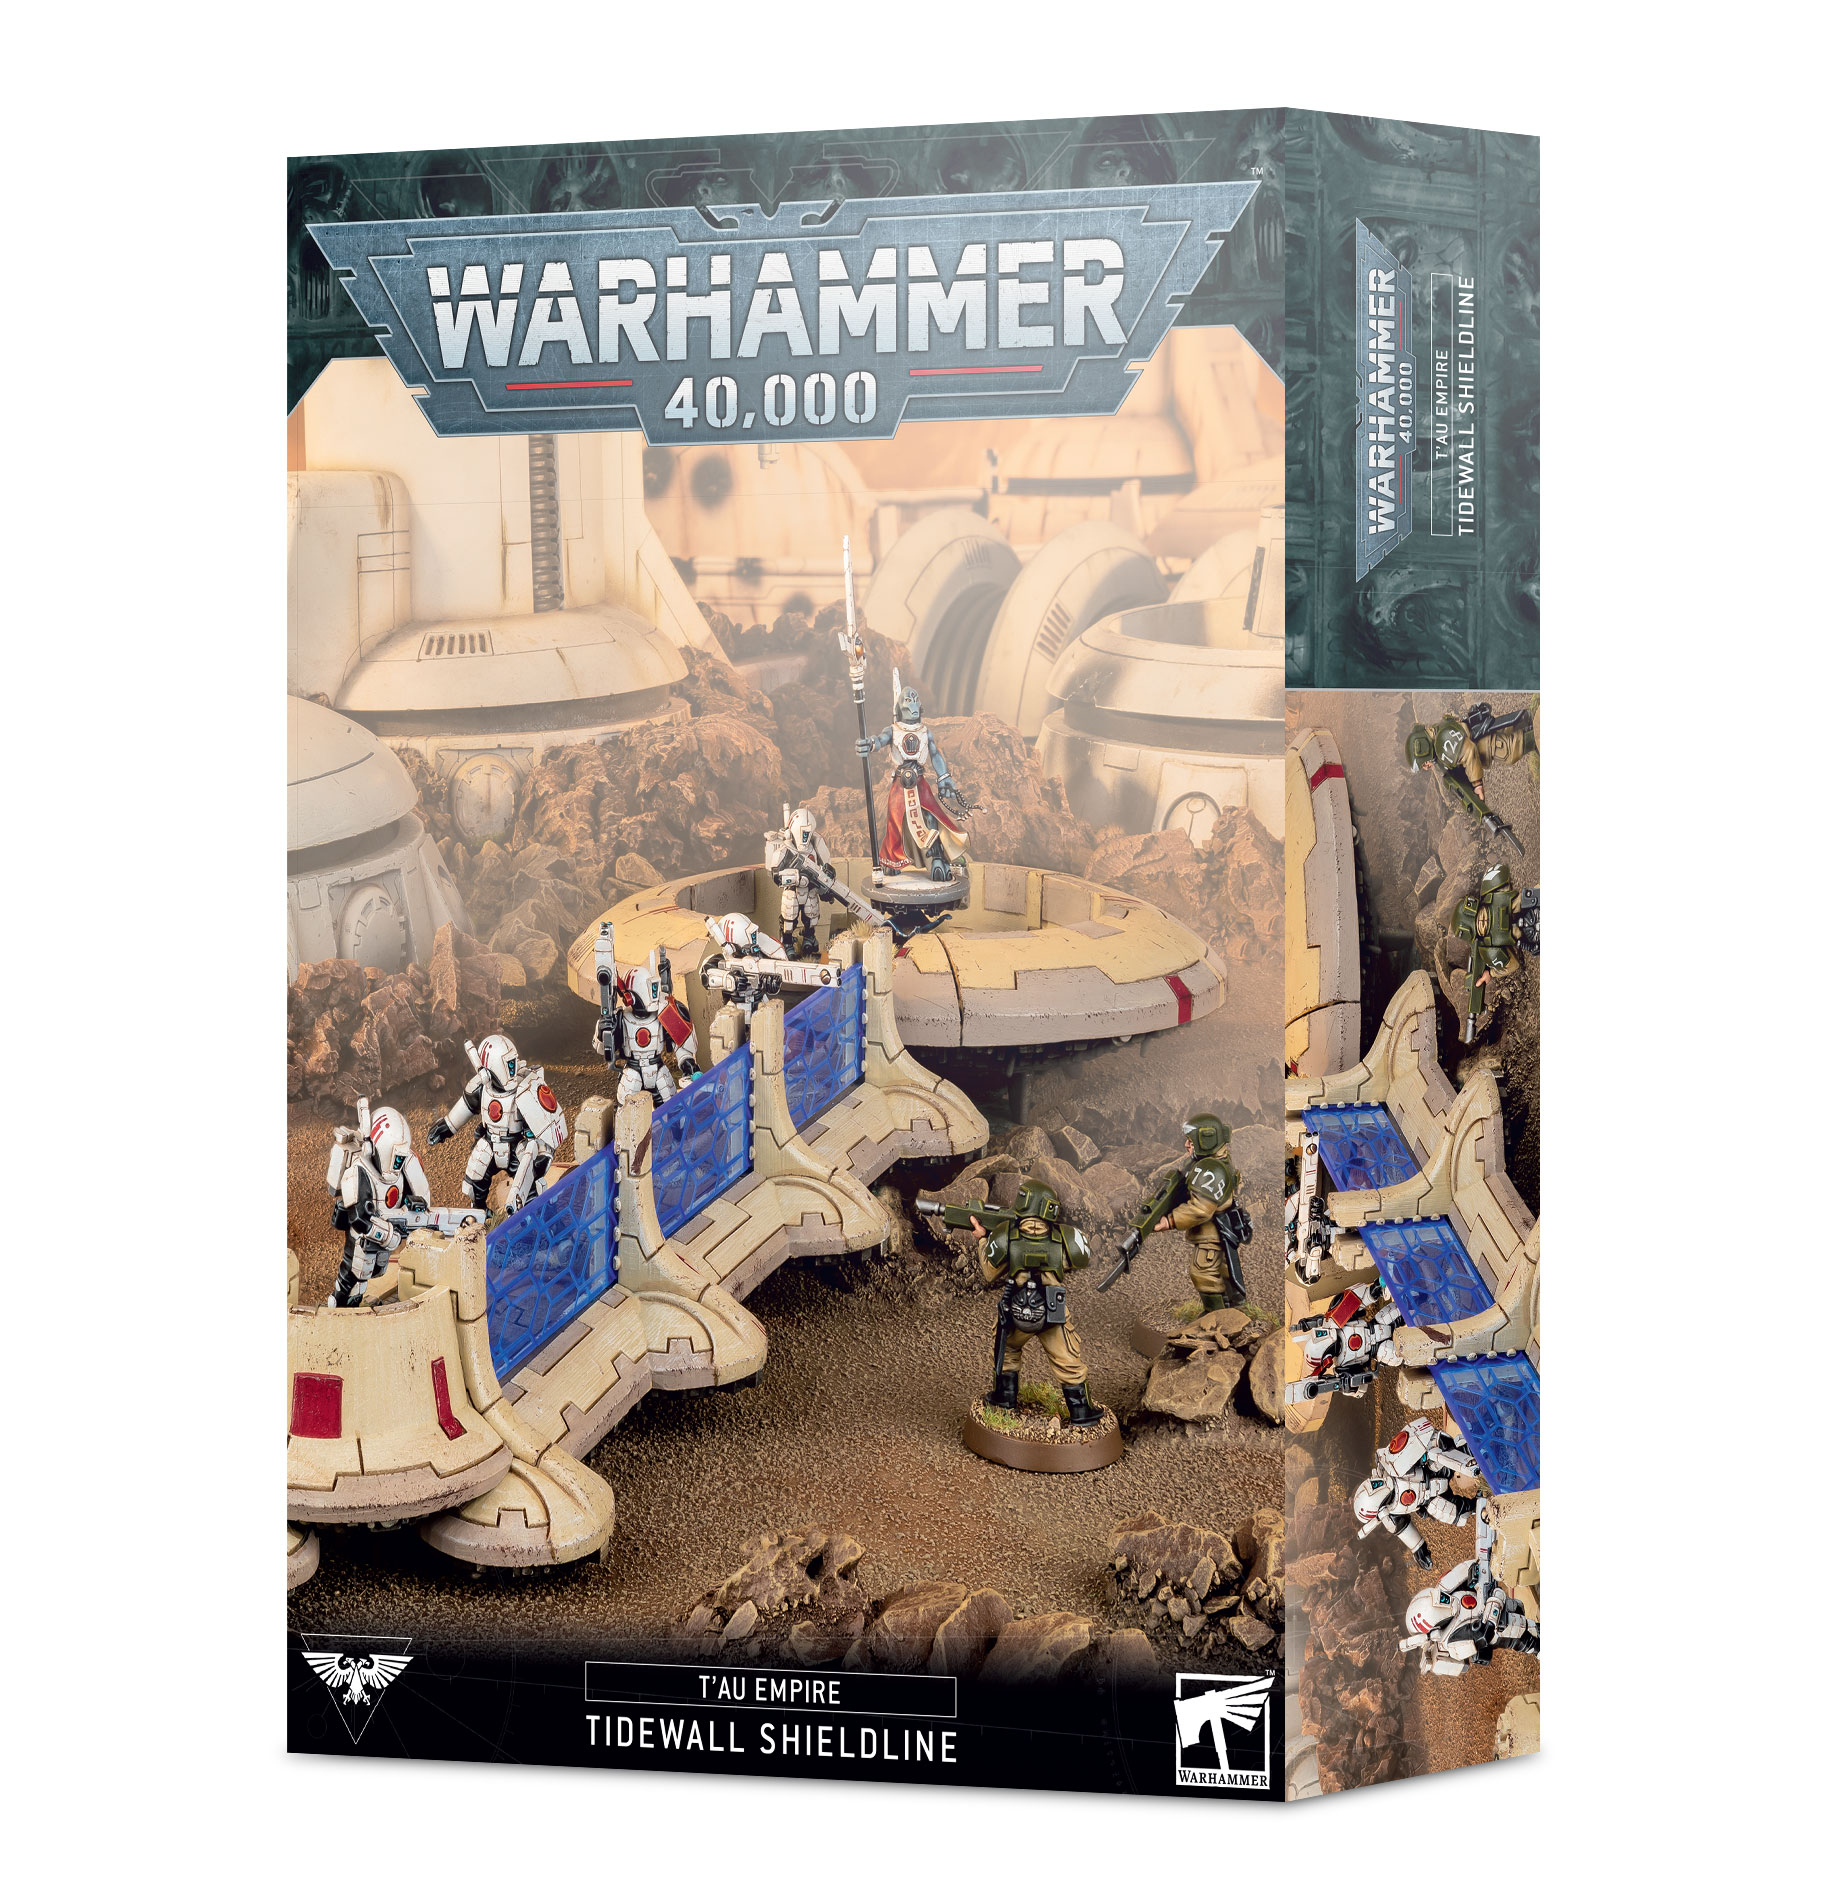 Warhammer 40,000: Tau Empire: Tidewall Shieldline 